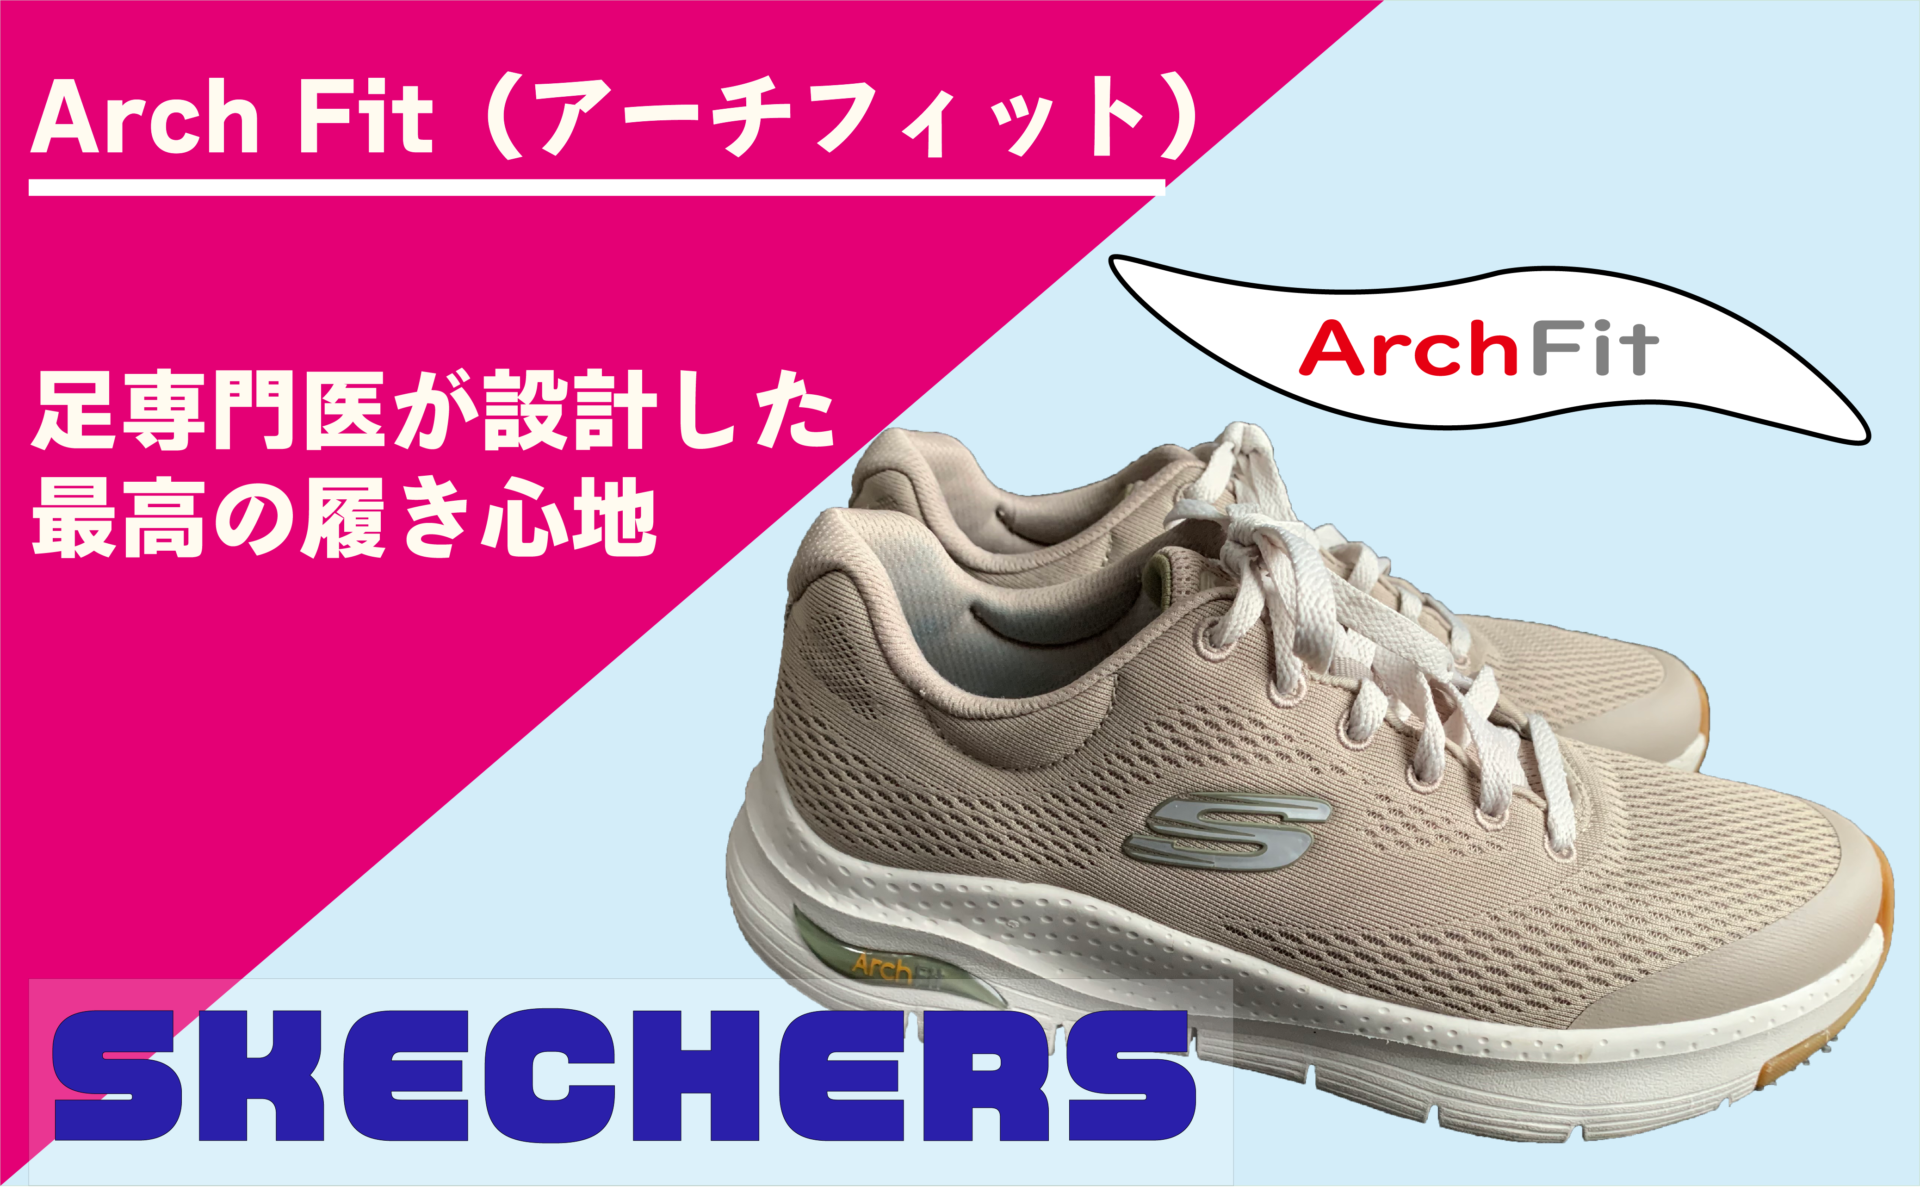 12515円 【１着でも送料無料】 スケッチャーズ Skechers シューズ スポーツシューズ トレーナー Arch Fit